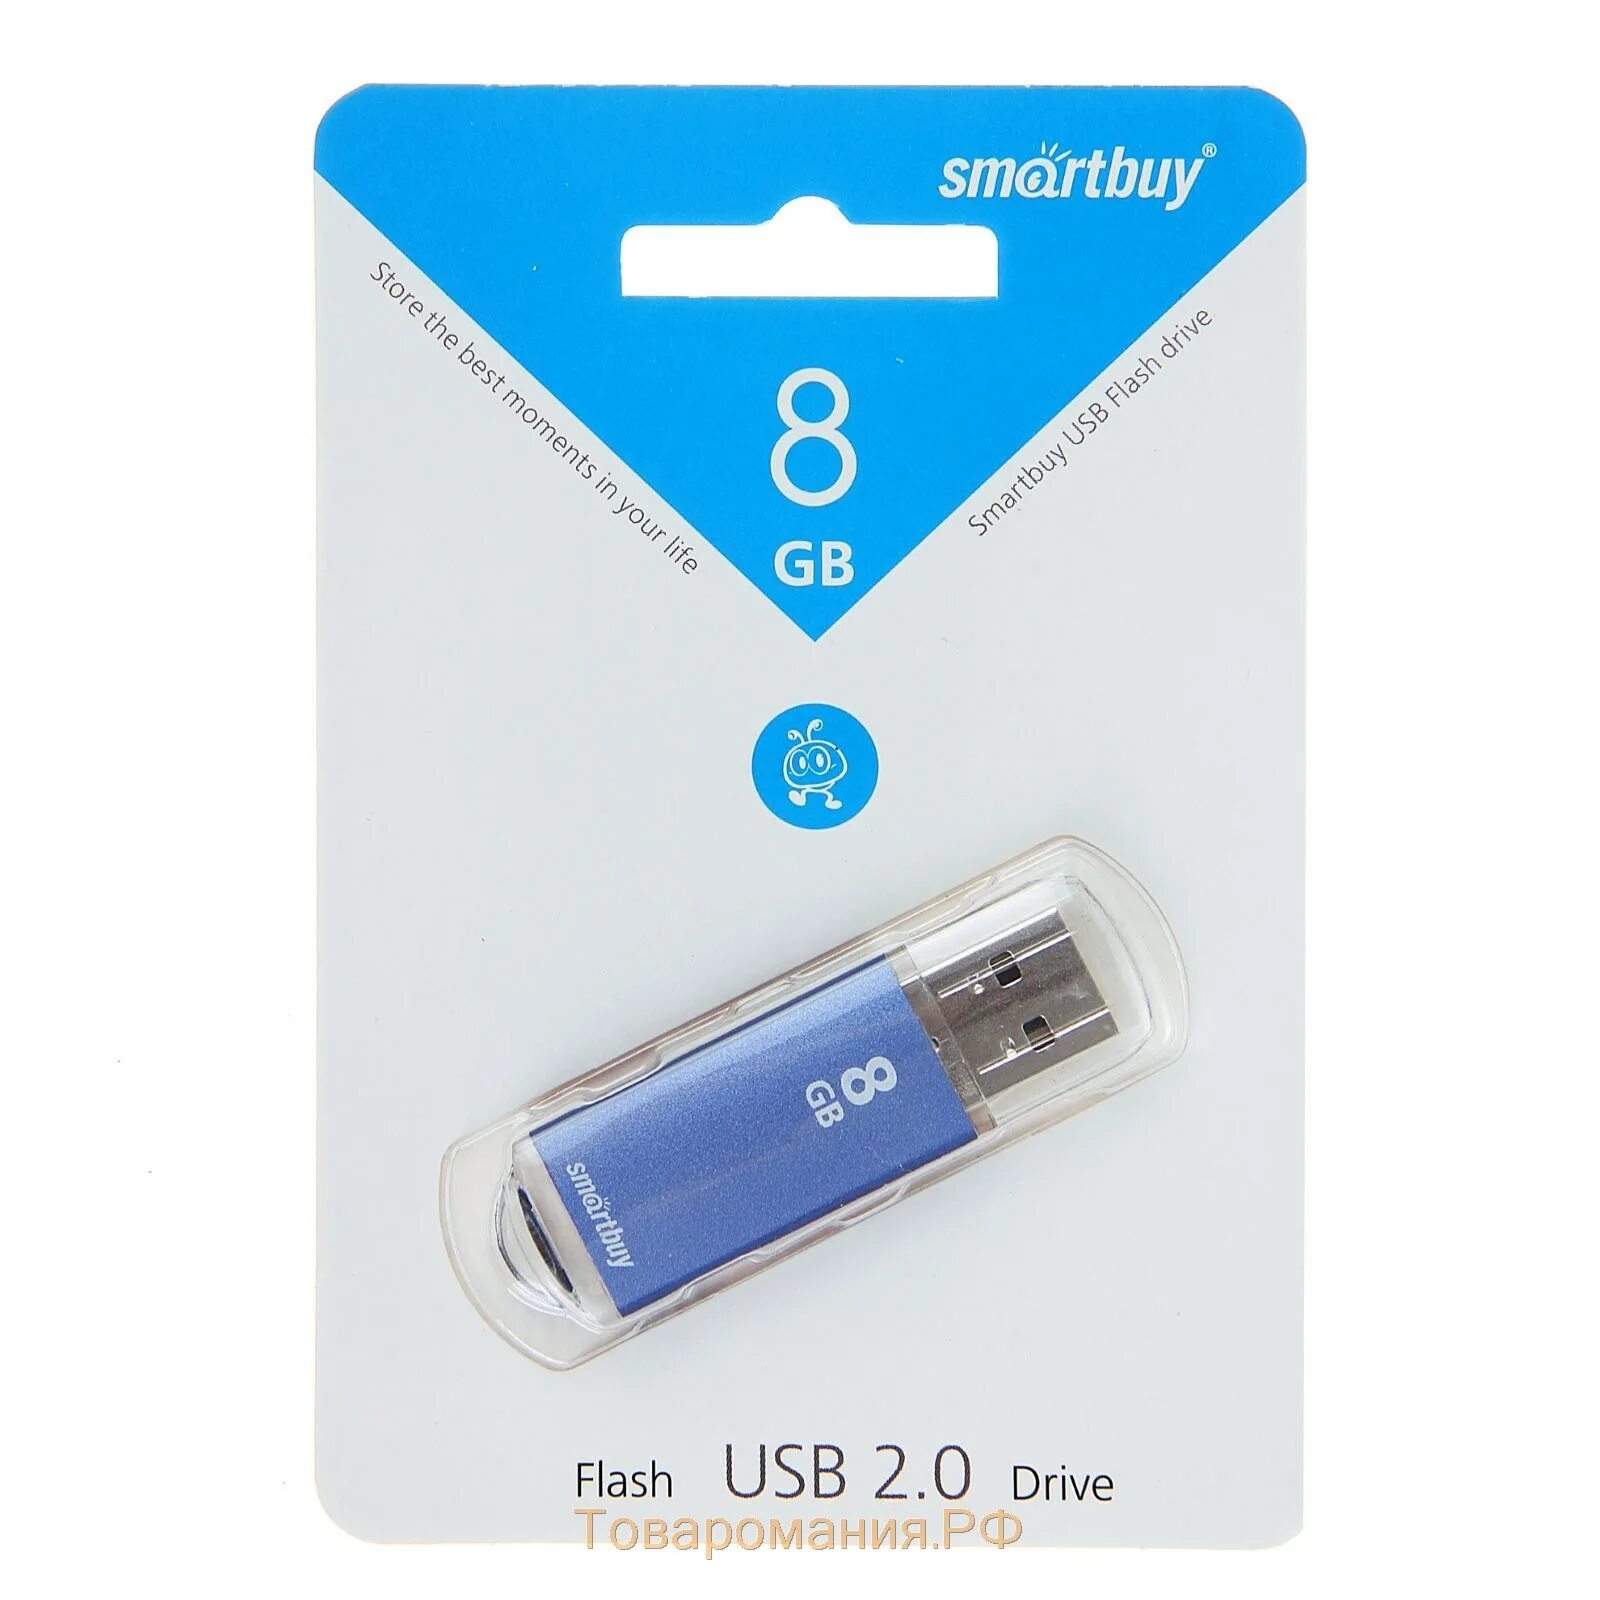 Флешка 8 гб. Флешка USB SMARTBUY V-Cut 8гб, USB2.0. USB 8gb SMARTBUY V-Cut Silver. Флешка 8гб SMARTBUY V Cut. Флеш-накопитель USB 8gb Smart buy v-Cut.